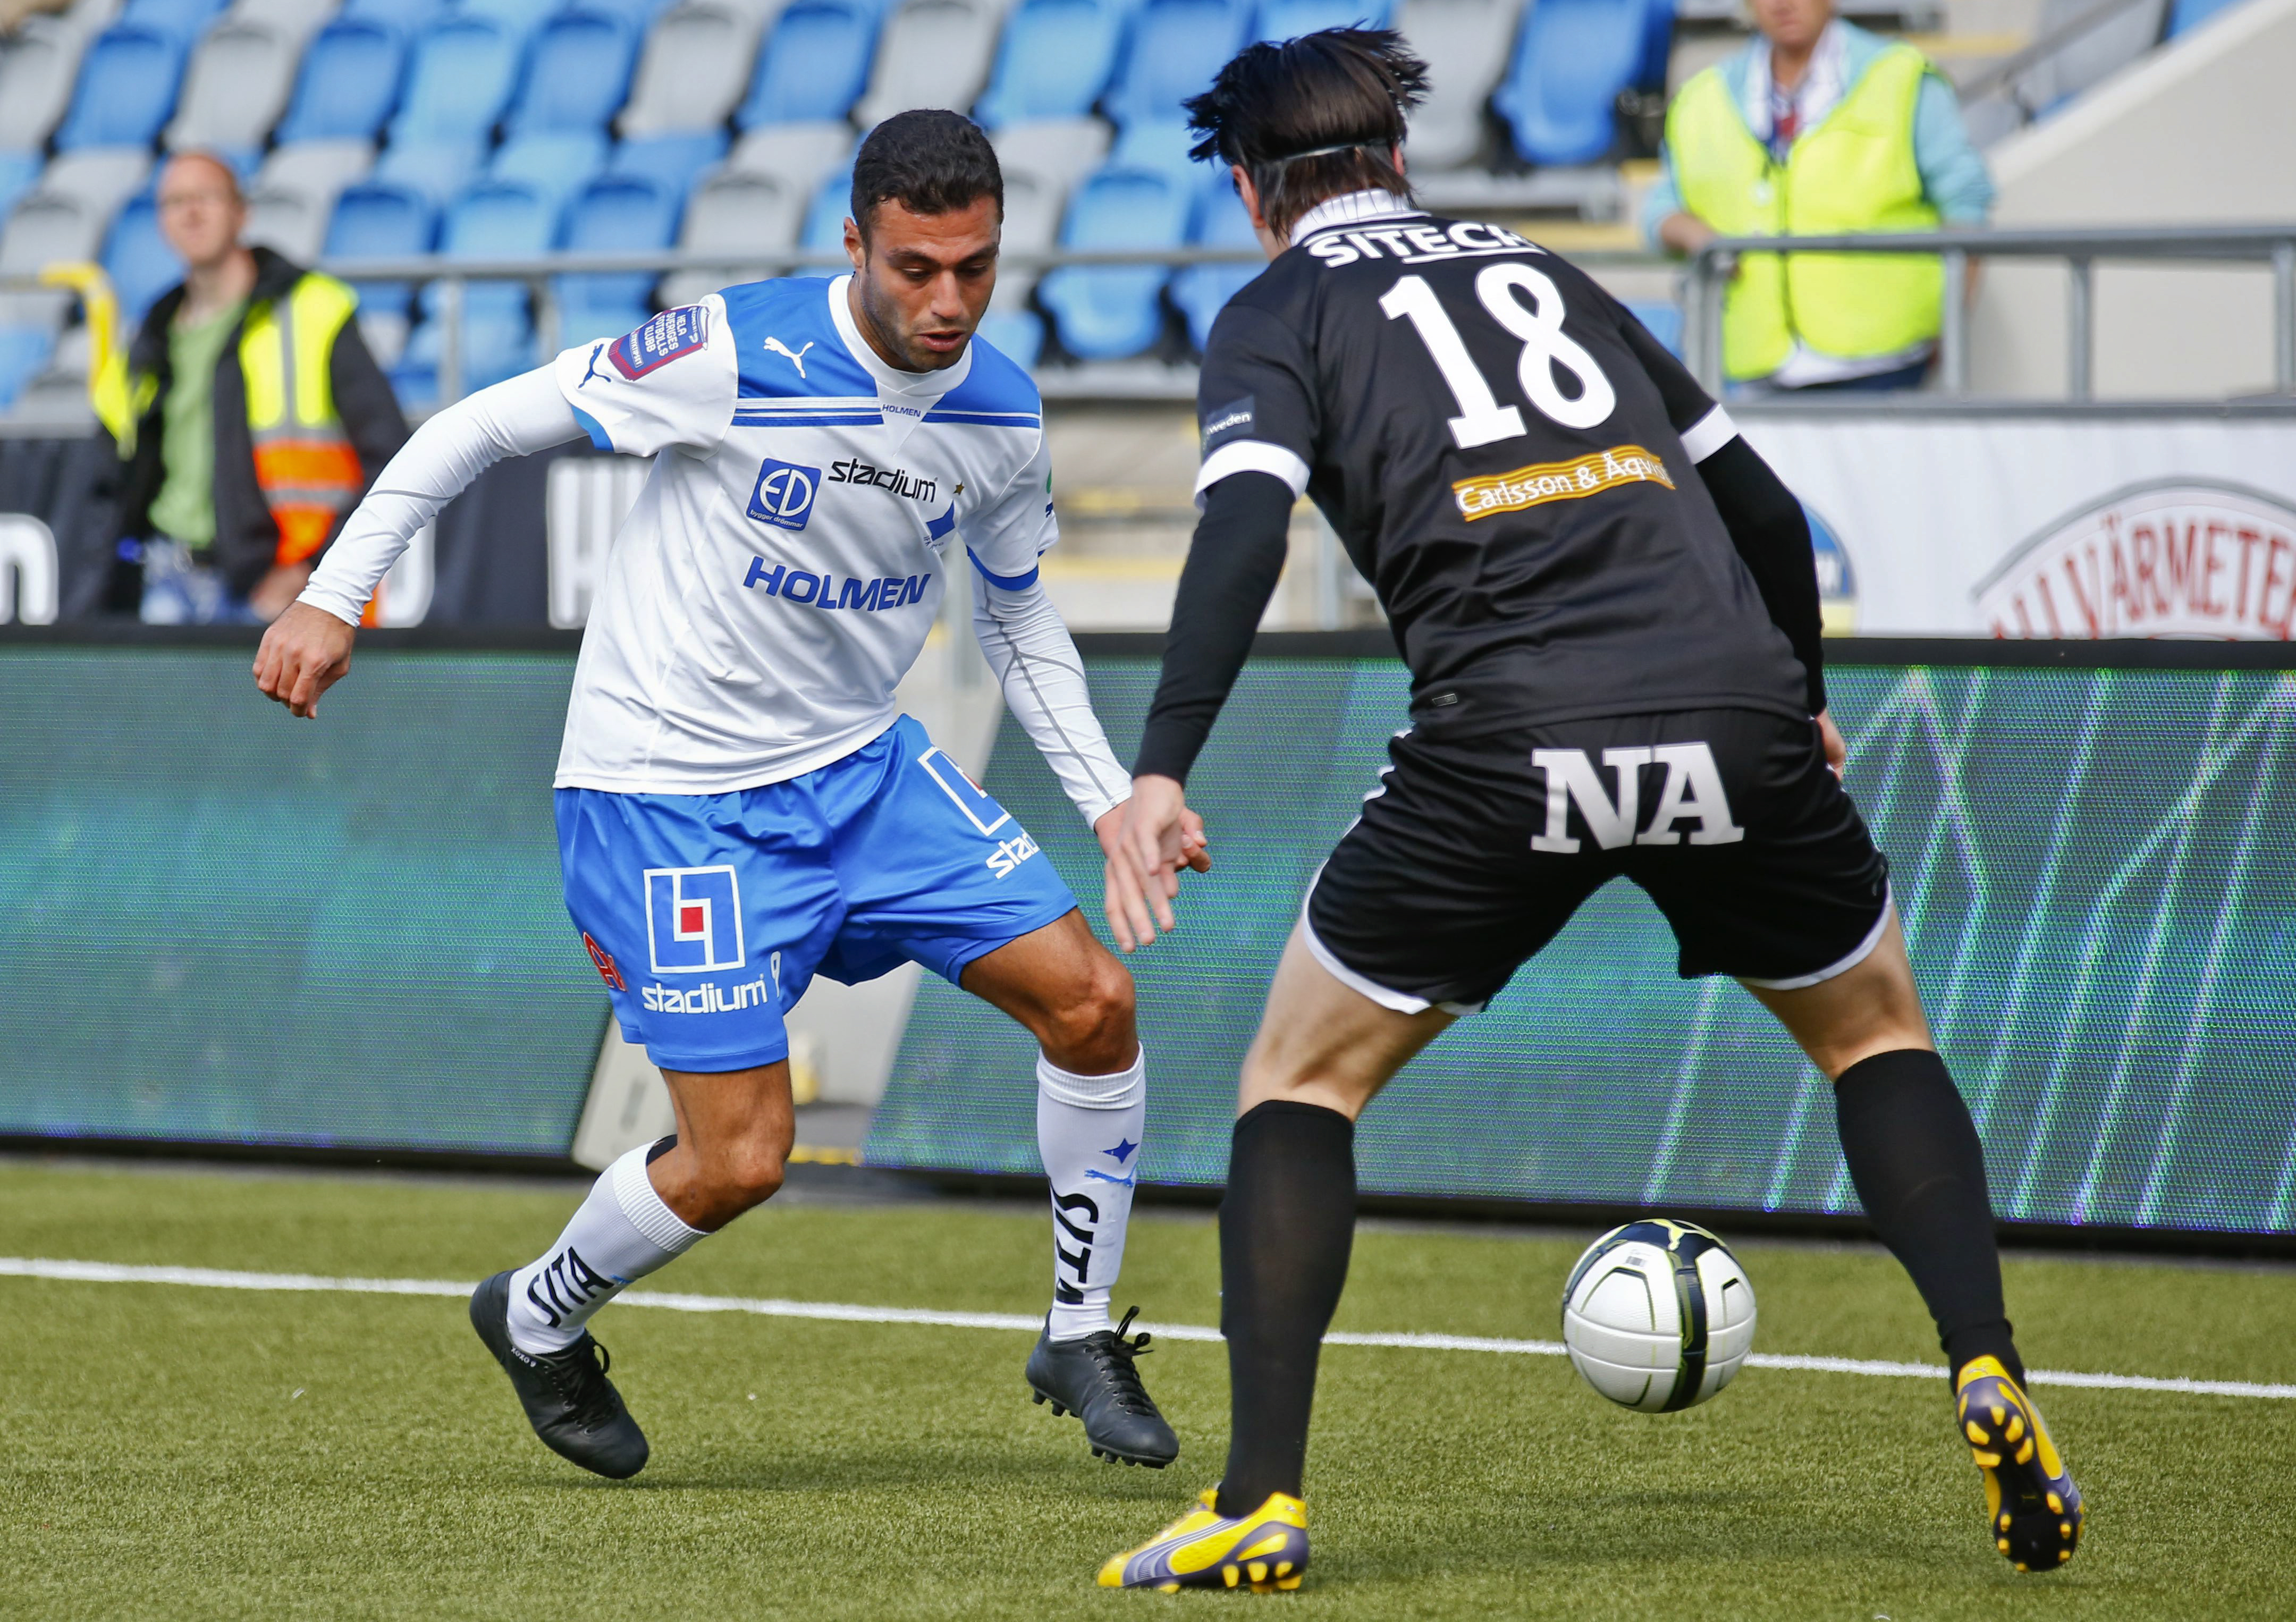 Imad Khalili, ÖSK, IFK Norrköping, Fotboll, Örebro, Allsvenskan